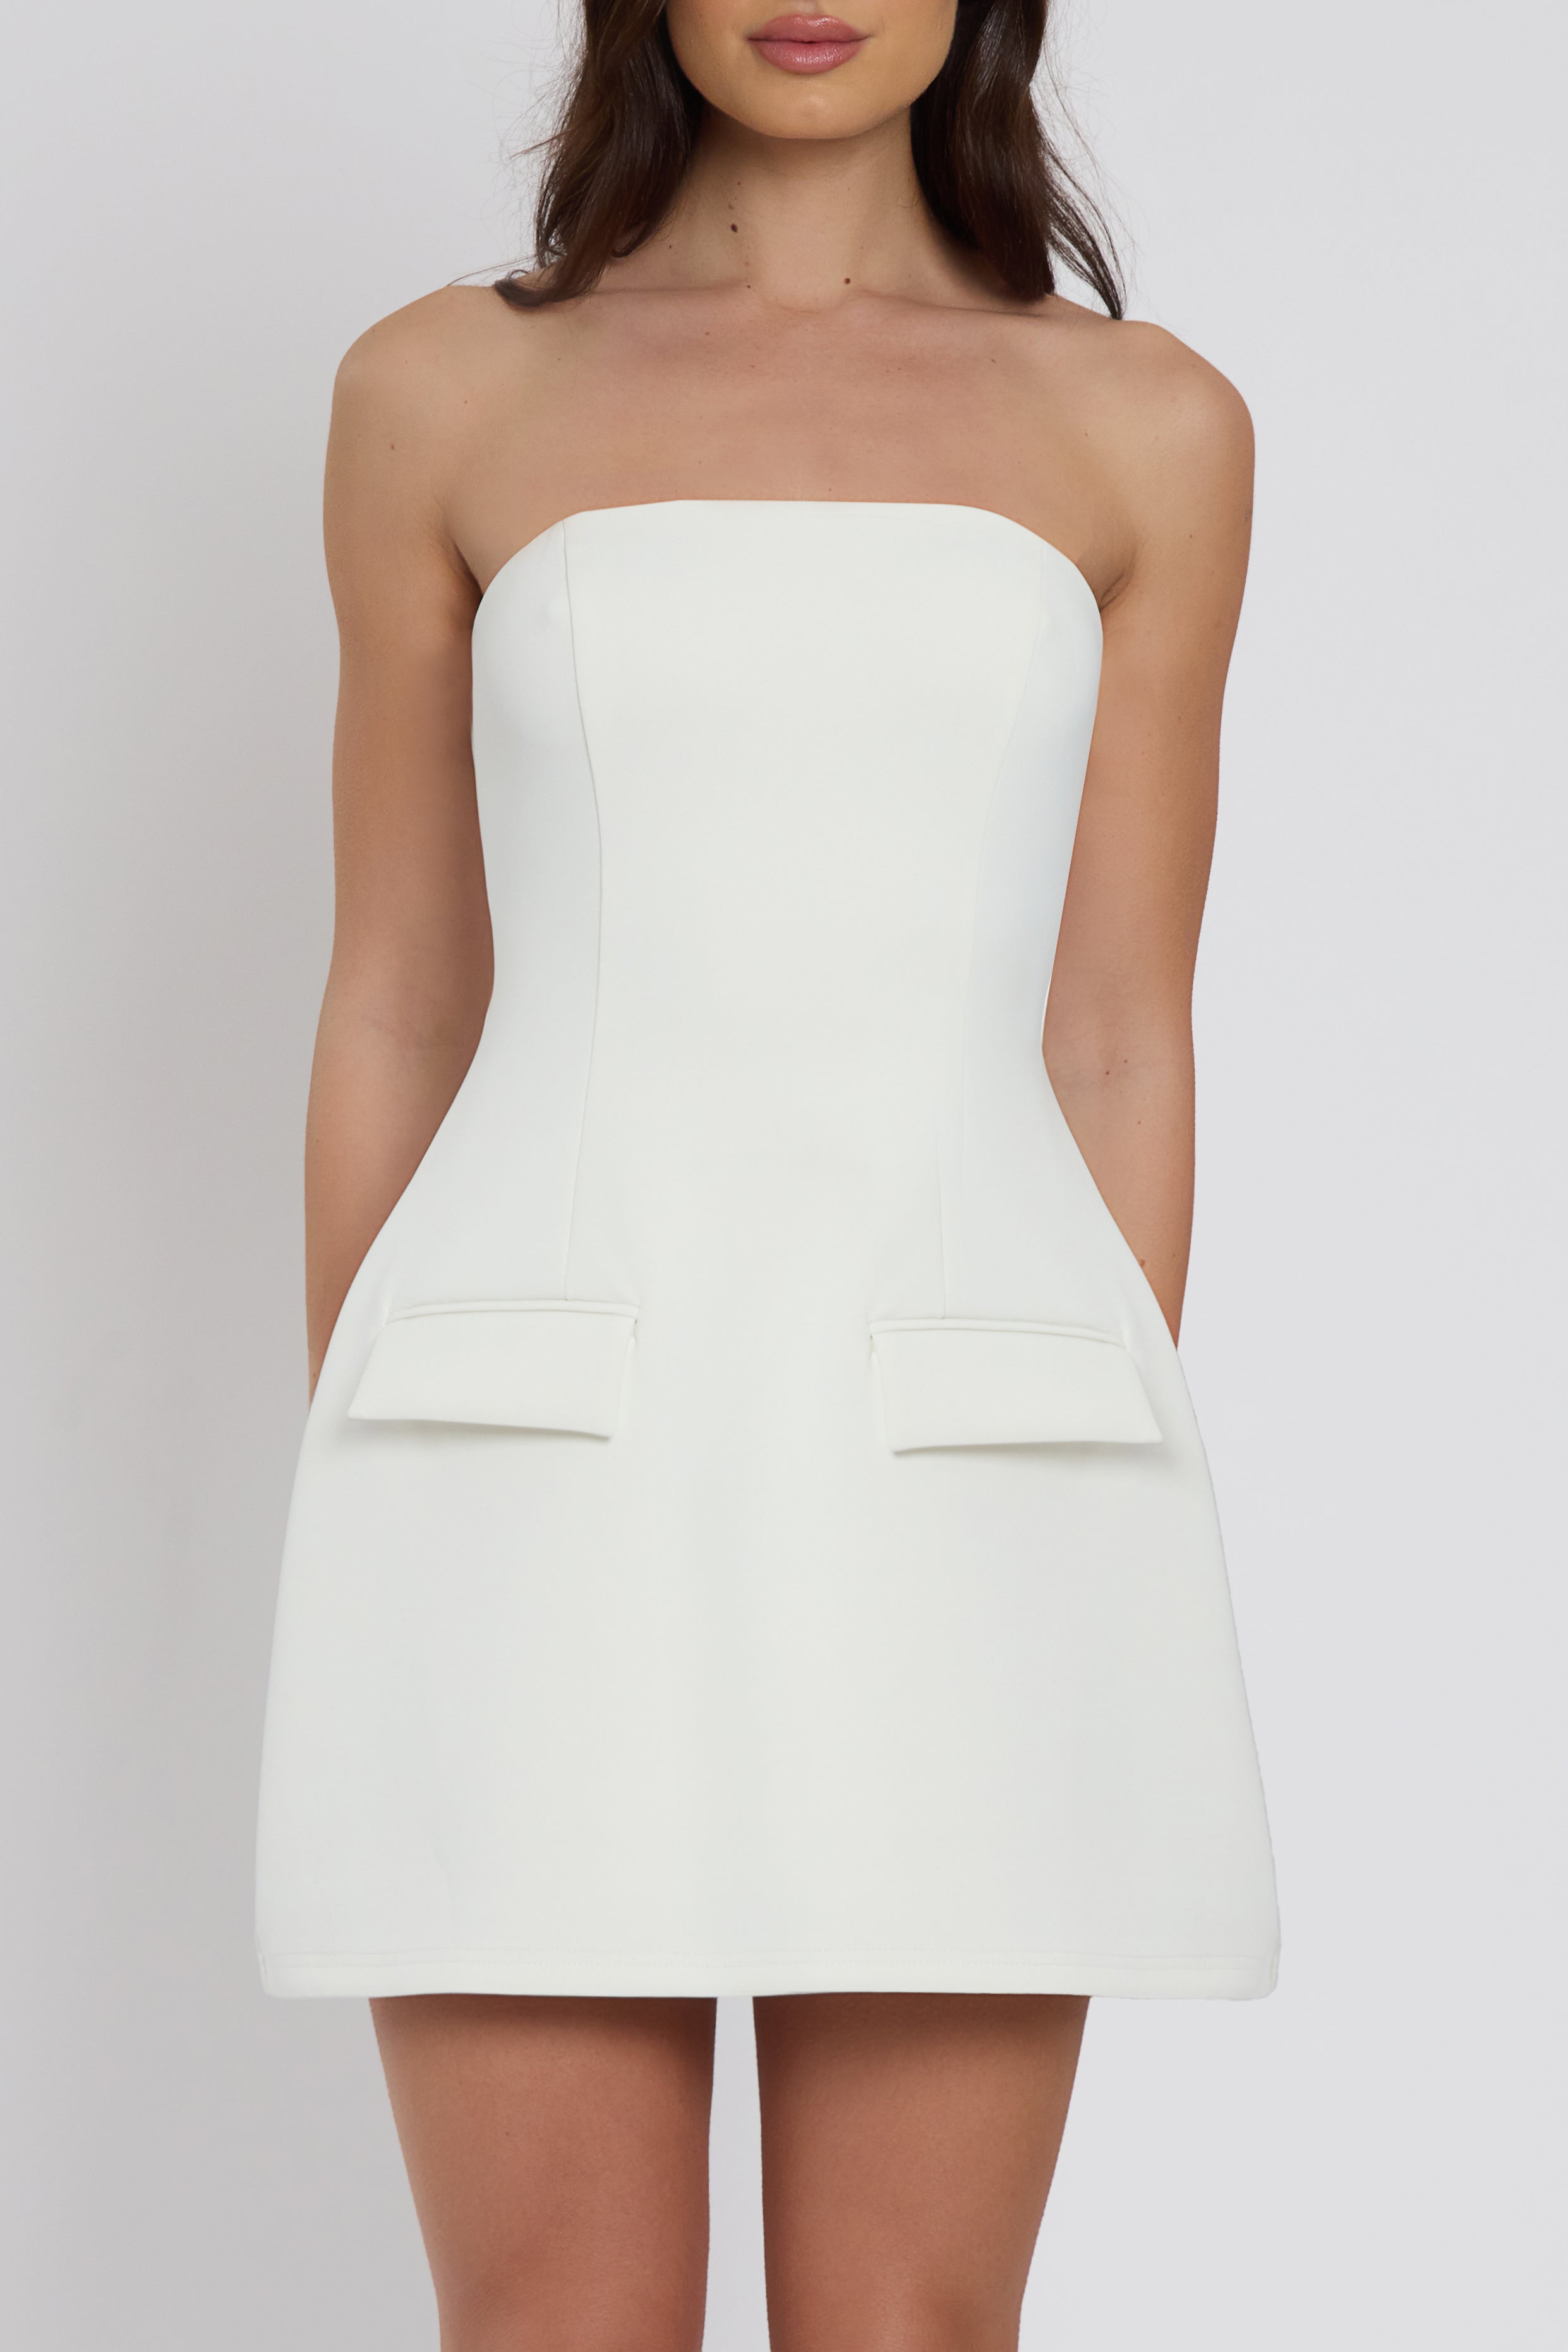 Solene Strapless Pocket Mini Dress - White